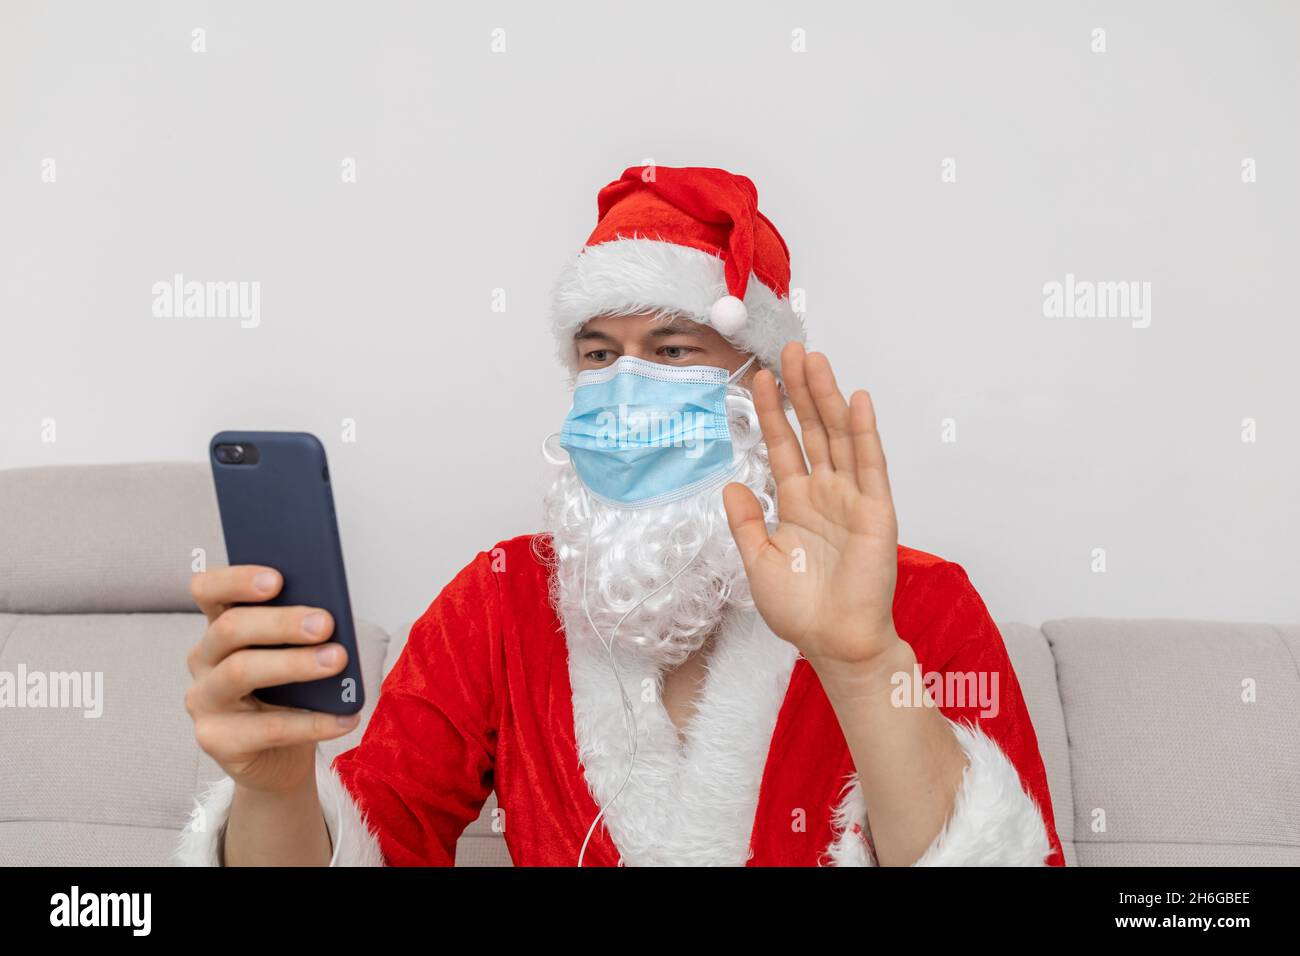 Vestido como Santa Claus hablando vía videoconferencia Foto de stock